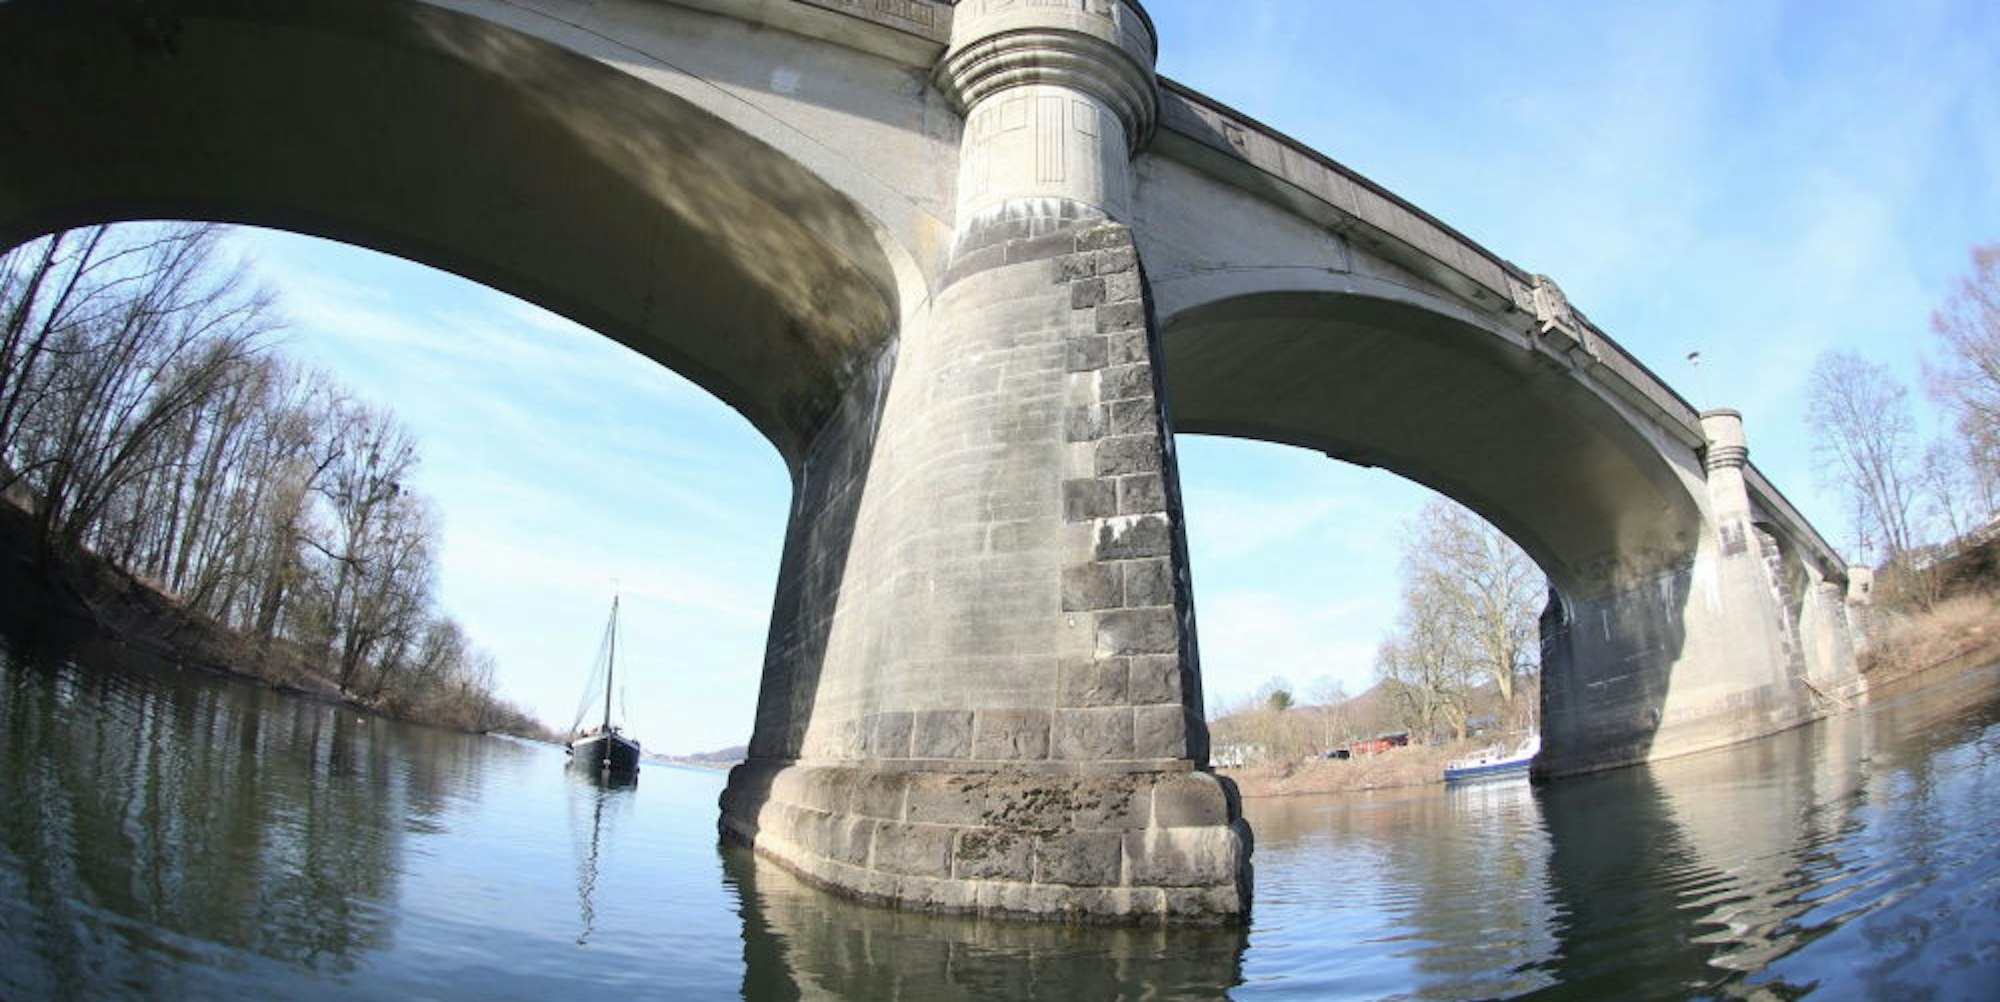 In die Jahre gekommen: Die marode Bogenbrücke, die das Festland mit der Insel Grafenwerth verbindet, weist erhebliche Schäden in der Bausubstanz auf und muss zeitnah saniert werden.